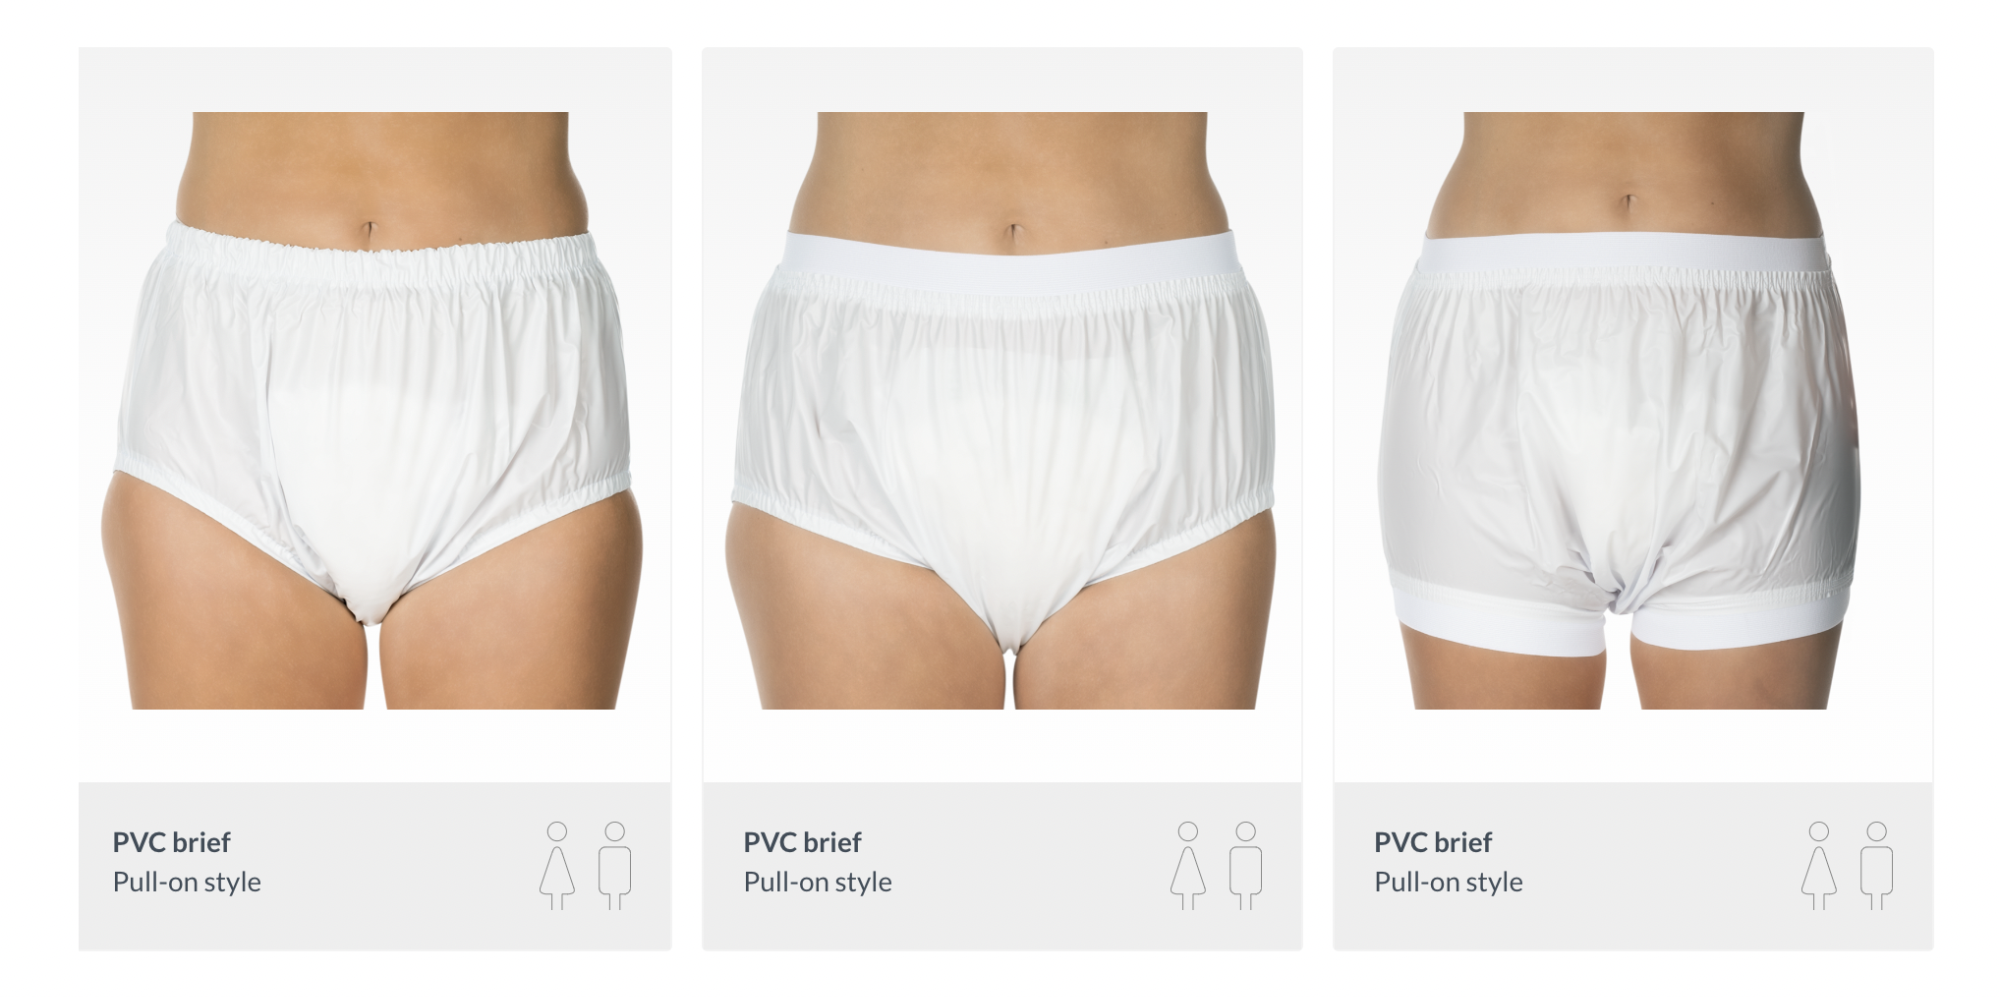 Verschiedene Suprima Plastikhosen (PVC Hosen) für Inkontinenz